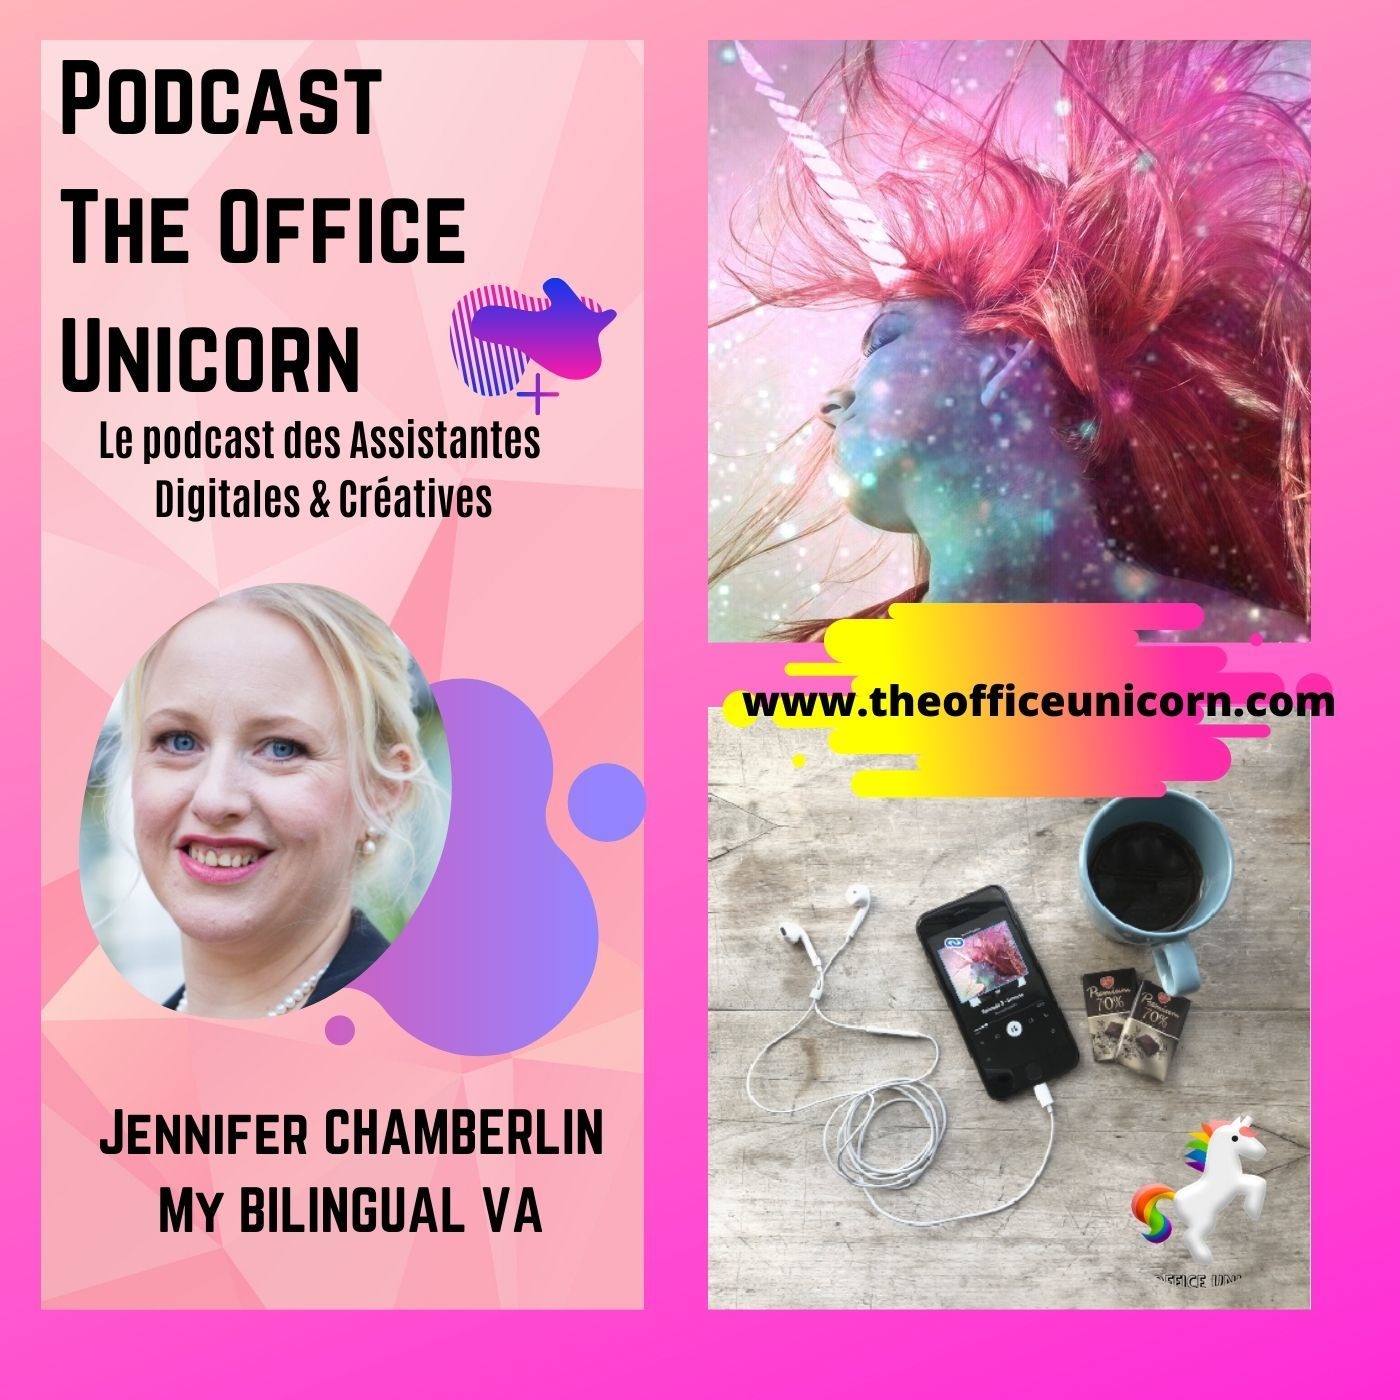 Découvrez le portrait de Jennifer Chamberlin assistante virtuelle (My Bilingual VA)